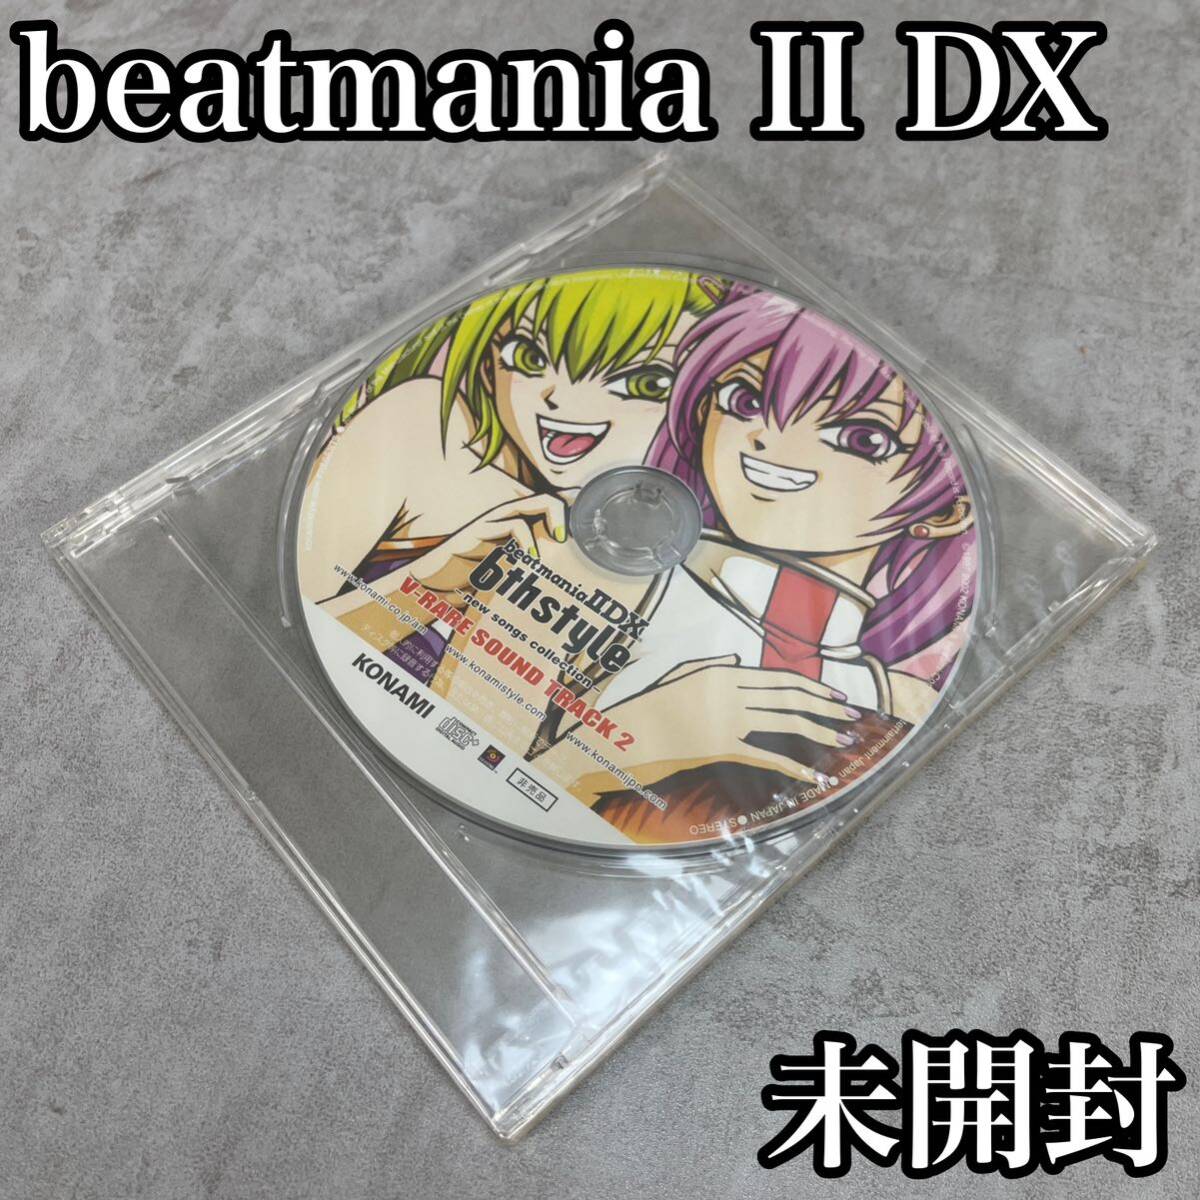 超希少 非売品 未開封 KONAMI コナミ beatmaniaⅡDX ビートマニア2 6th style V-RARE SOUND TRACK2 サントラ サウンドトラックの画像1